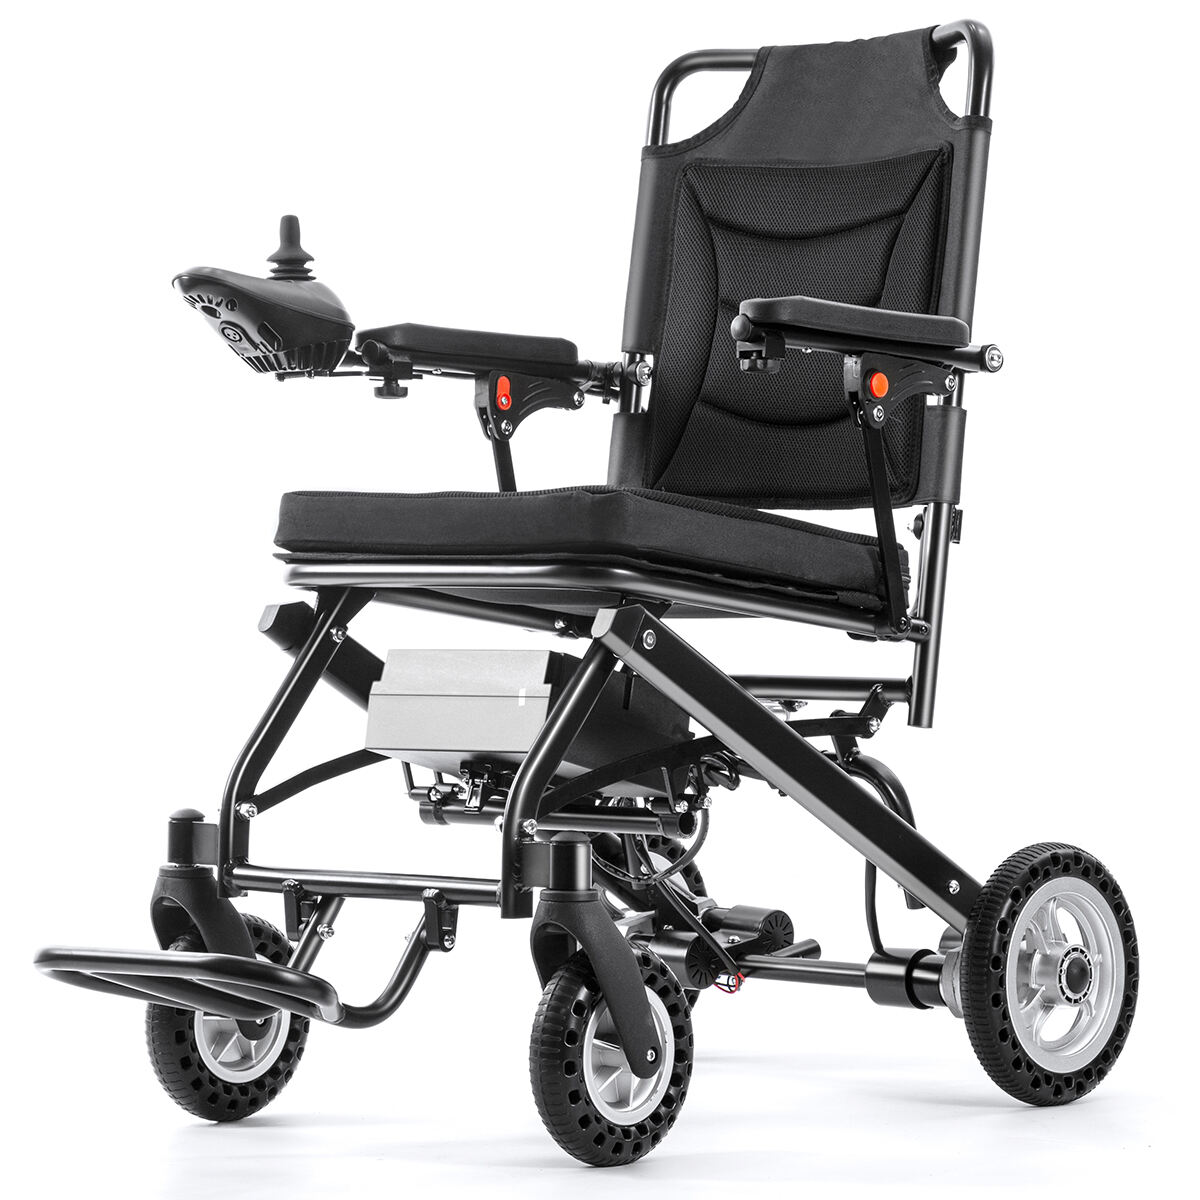 Inteligentný skladací elektrický invalidný vozík BC-EA5516-SL s nízkou hmotnosťou